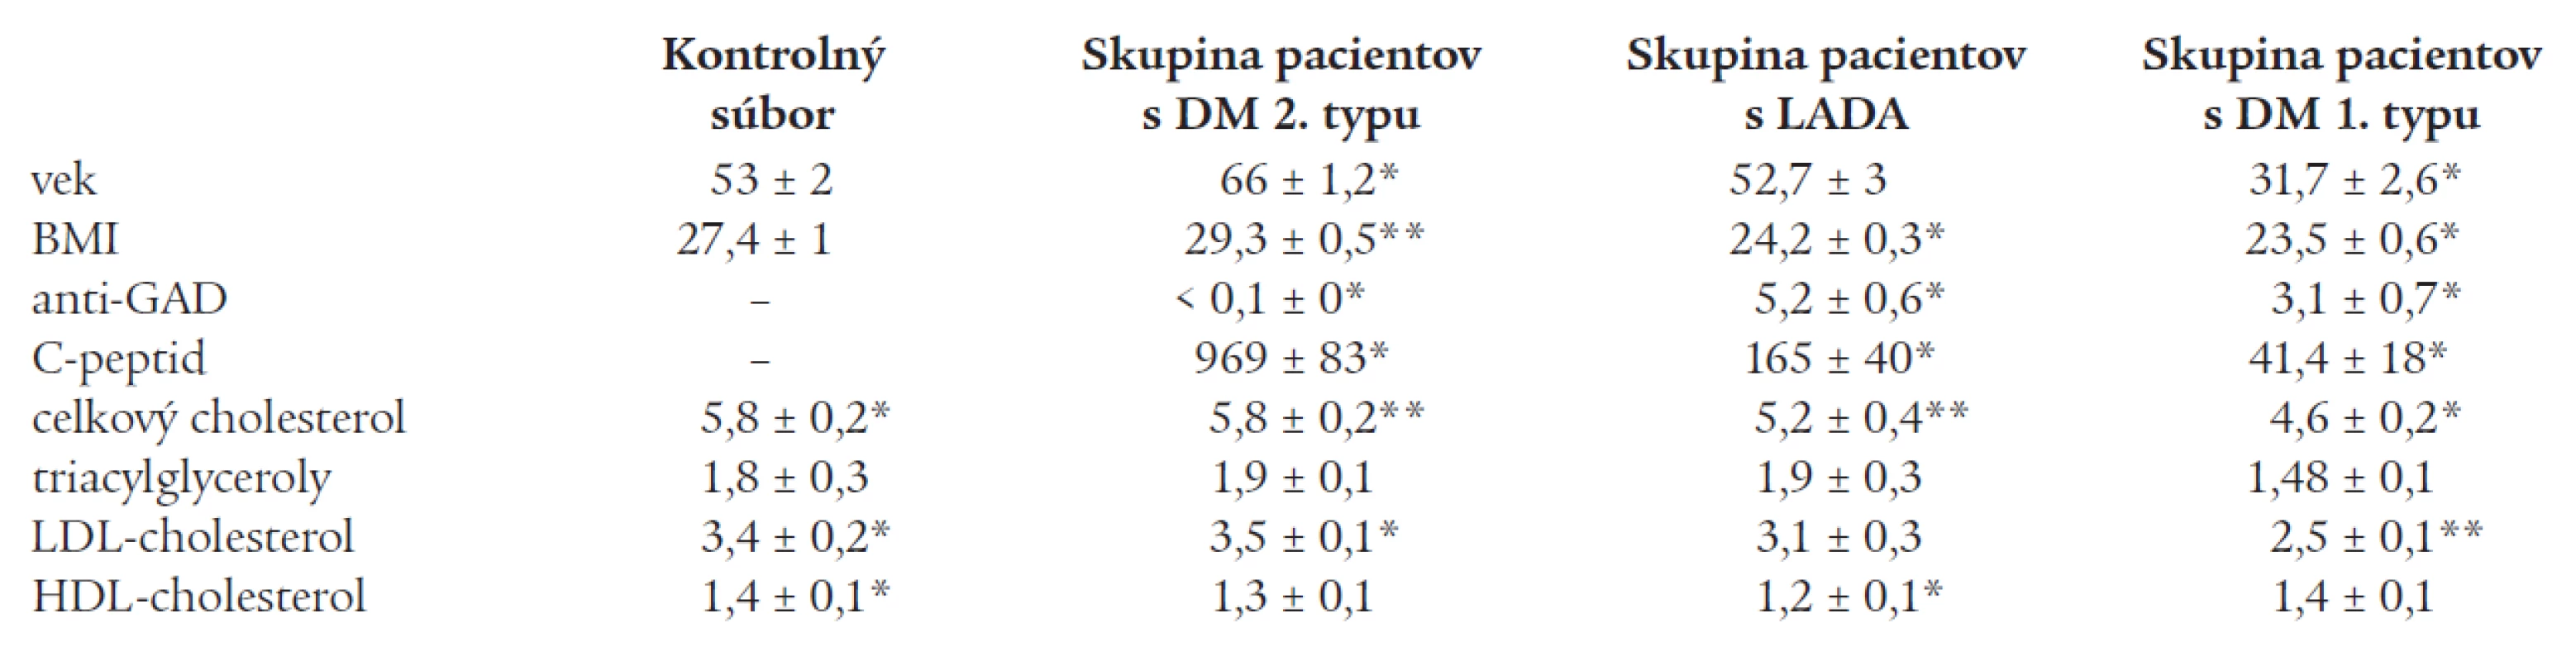 Priemerné hodnoty kvantitatívnych parametrov (vek, BMI, C-peptid, anti-GAD, základný lipidový status) v kontrolnom súbore a jednotlivých skupinách pacientov s DM.